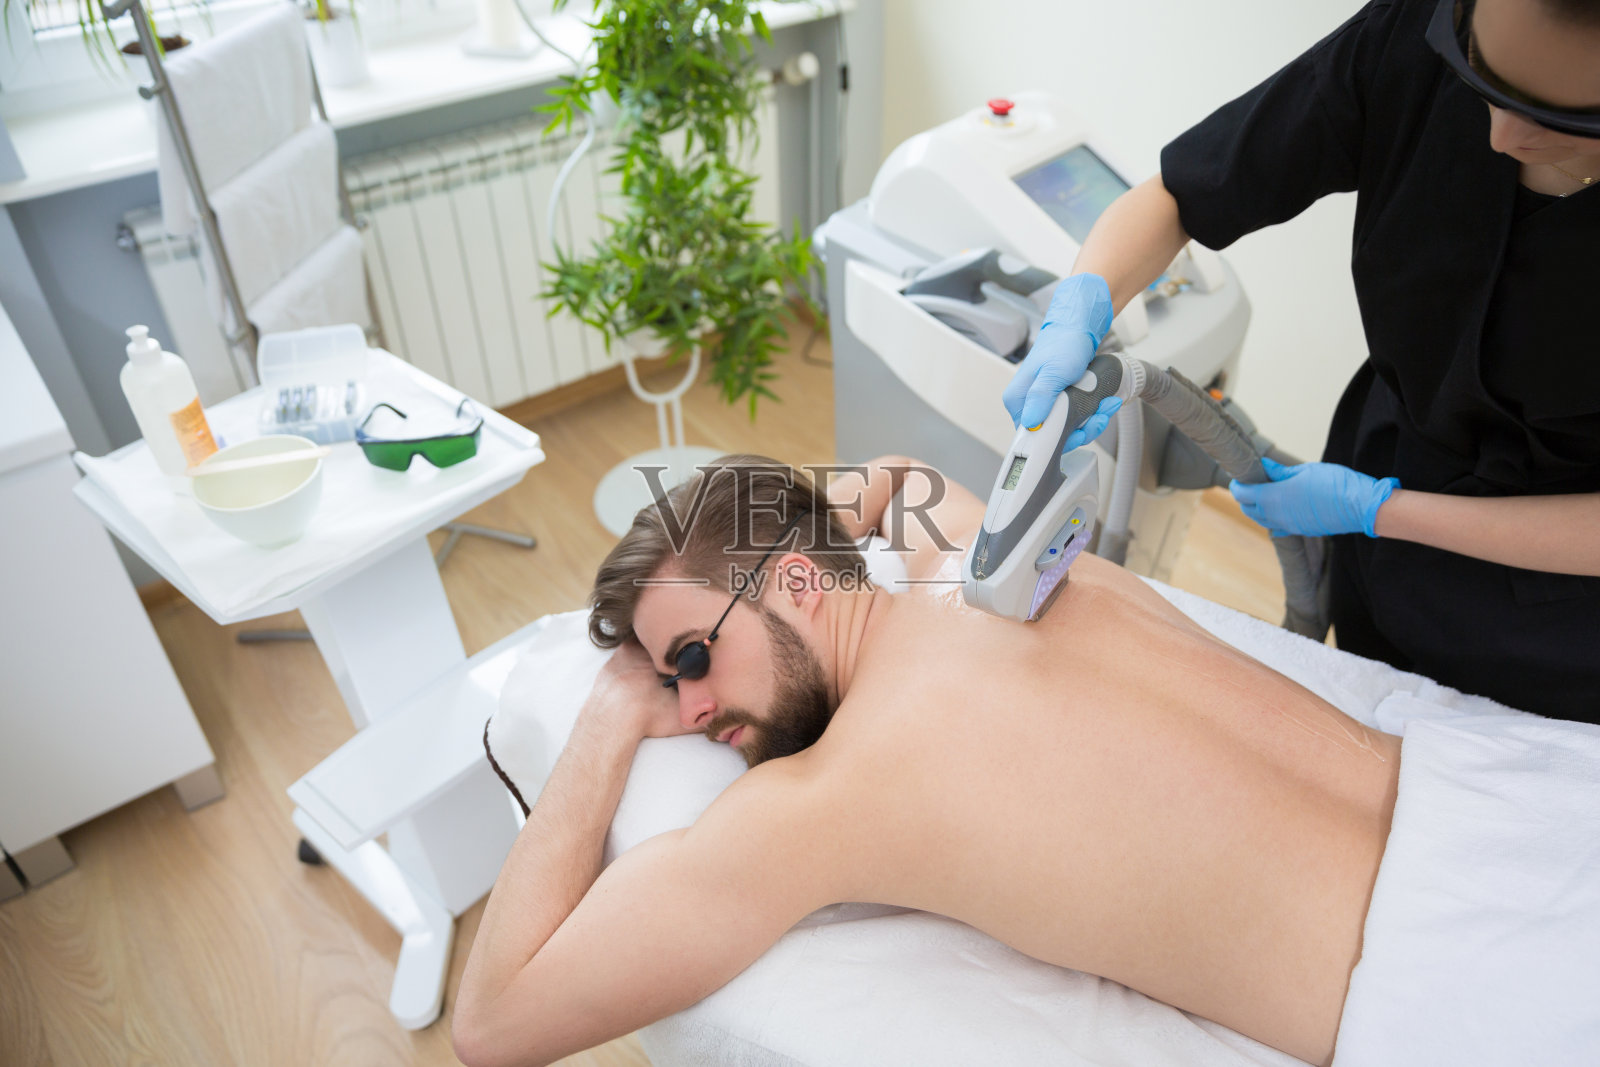 男性背部的IPL治疗照片摄影图片